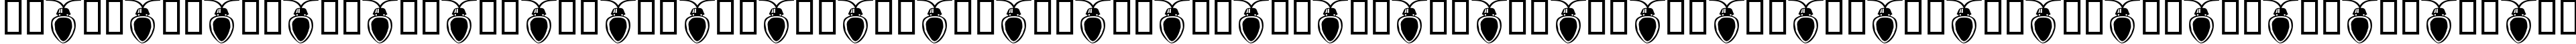 Пример написания русского алфавита шрифтом Fuzzy Xmas Lights